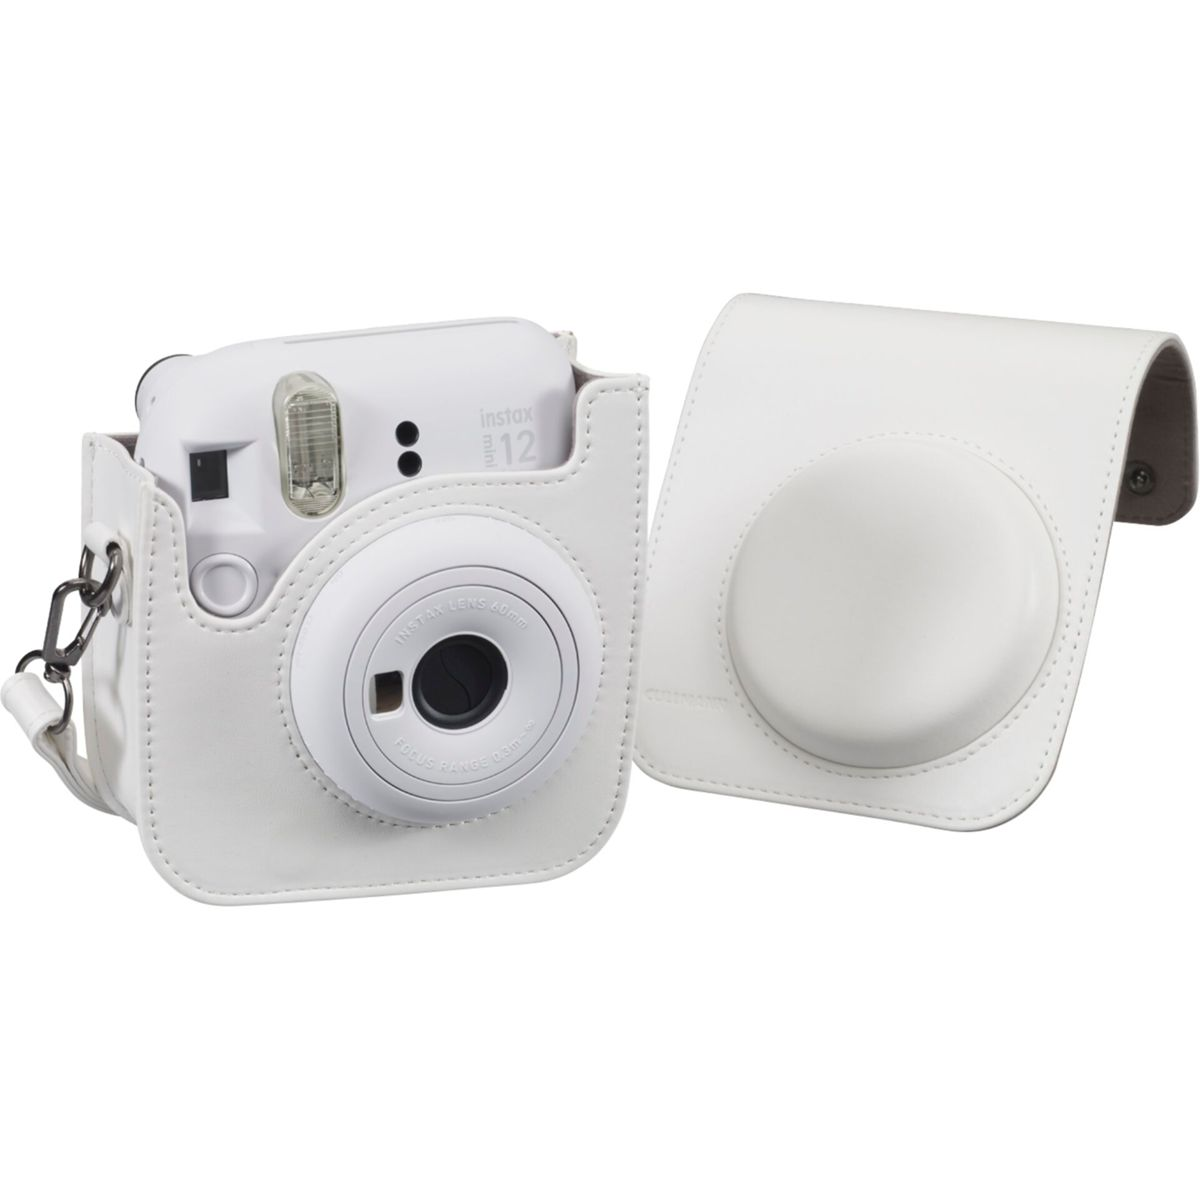 12 weiß Sofortbildkamera, Instax Mini weiß RIO CULLMANN Kameratasche Fit 120 für